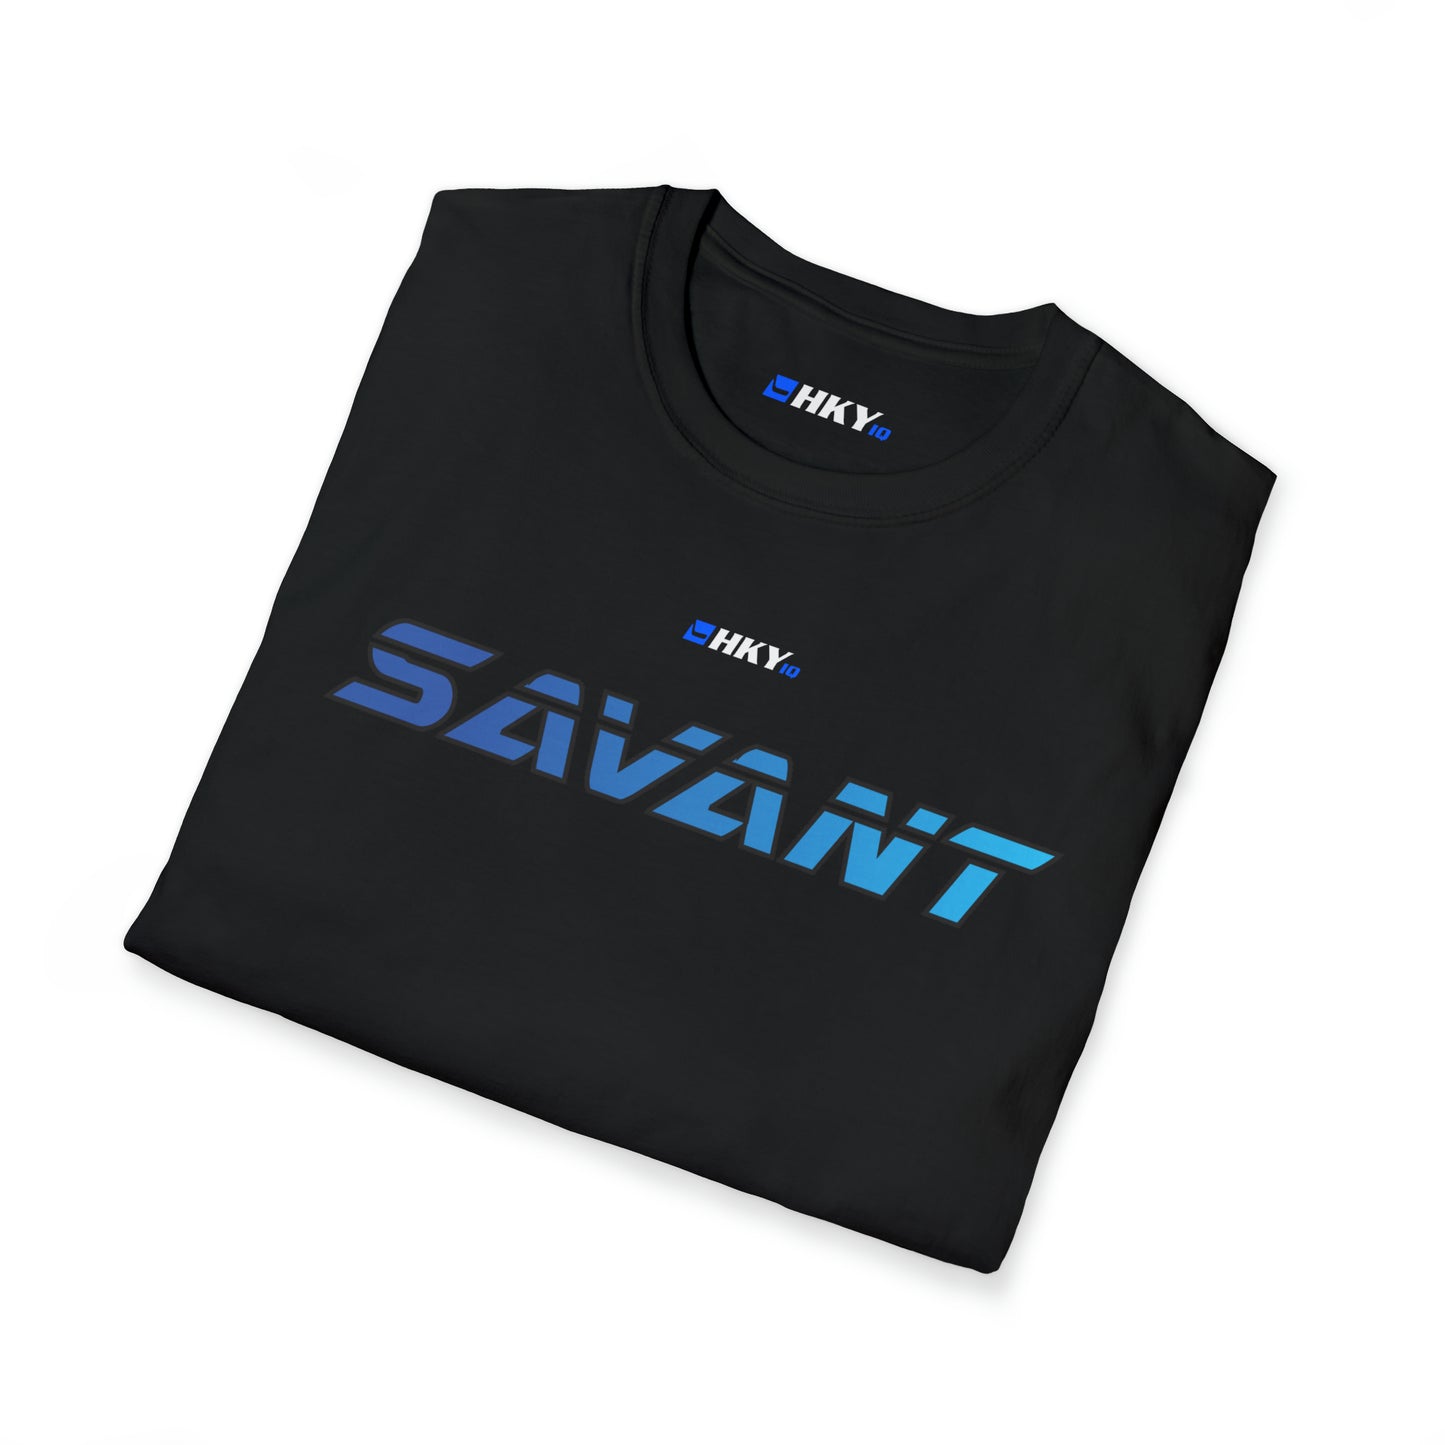 Savant T-Shirt